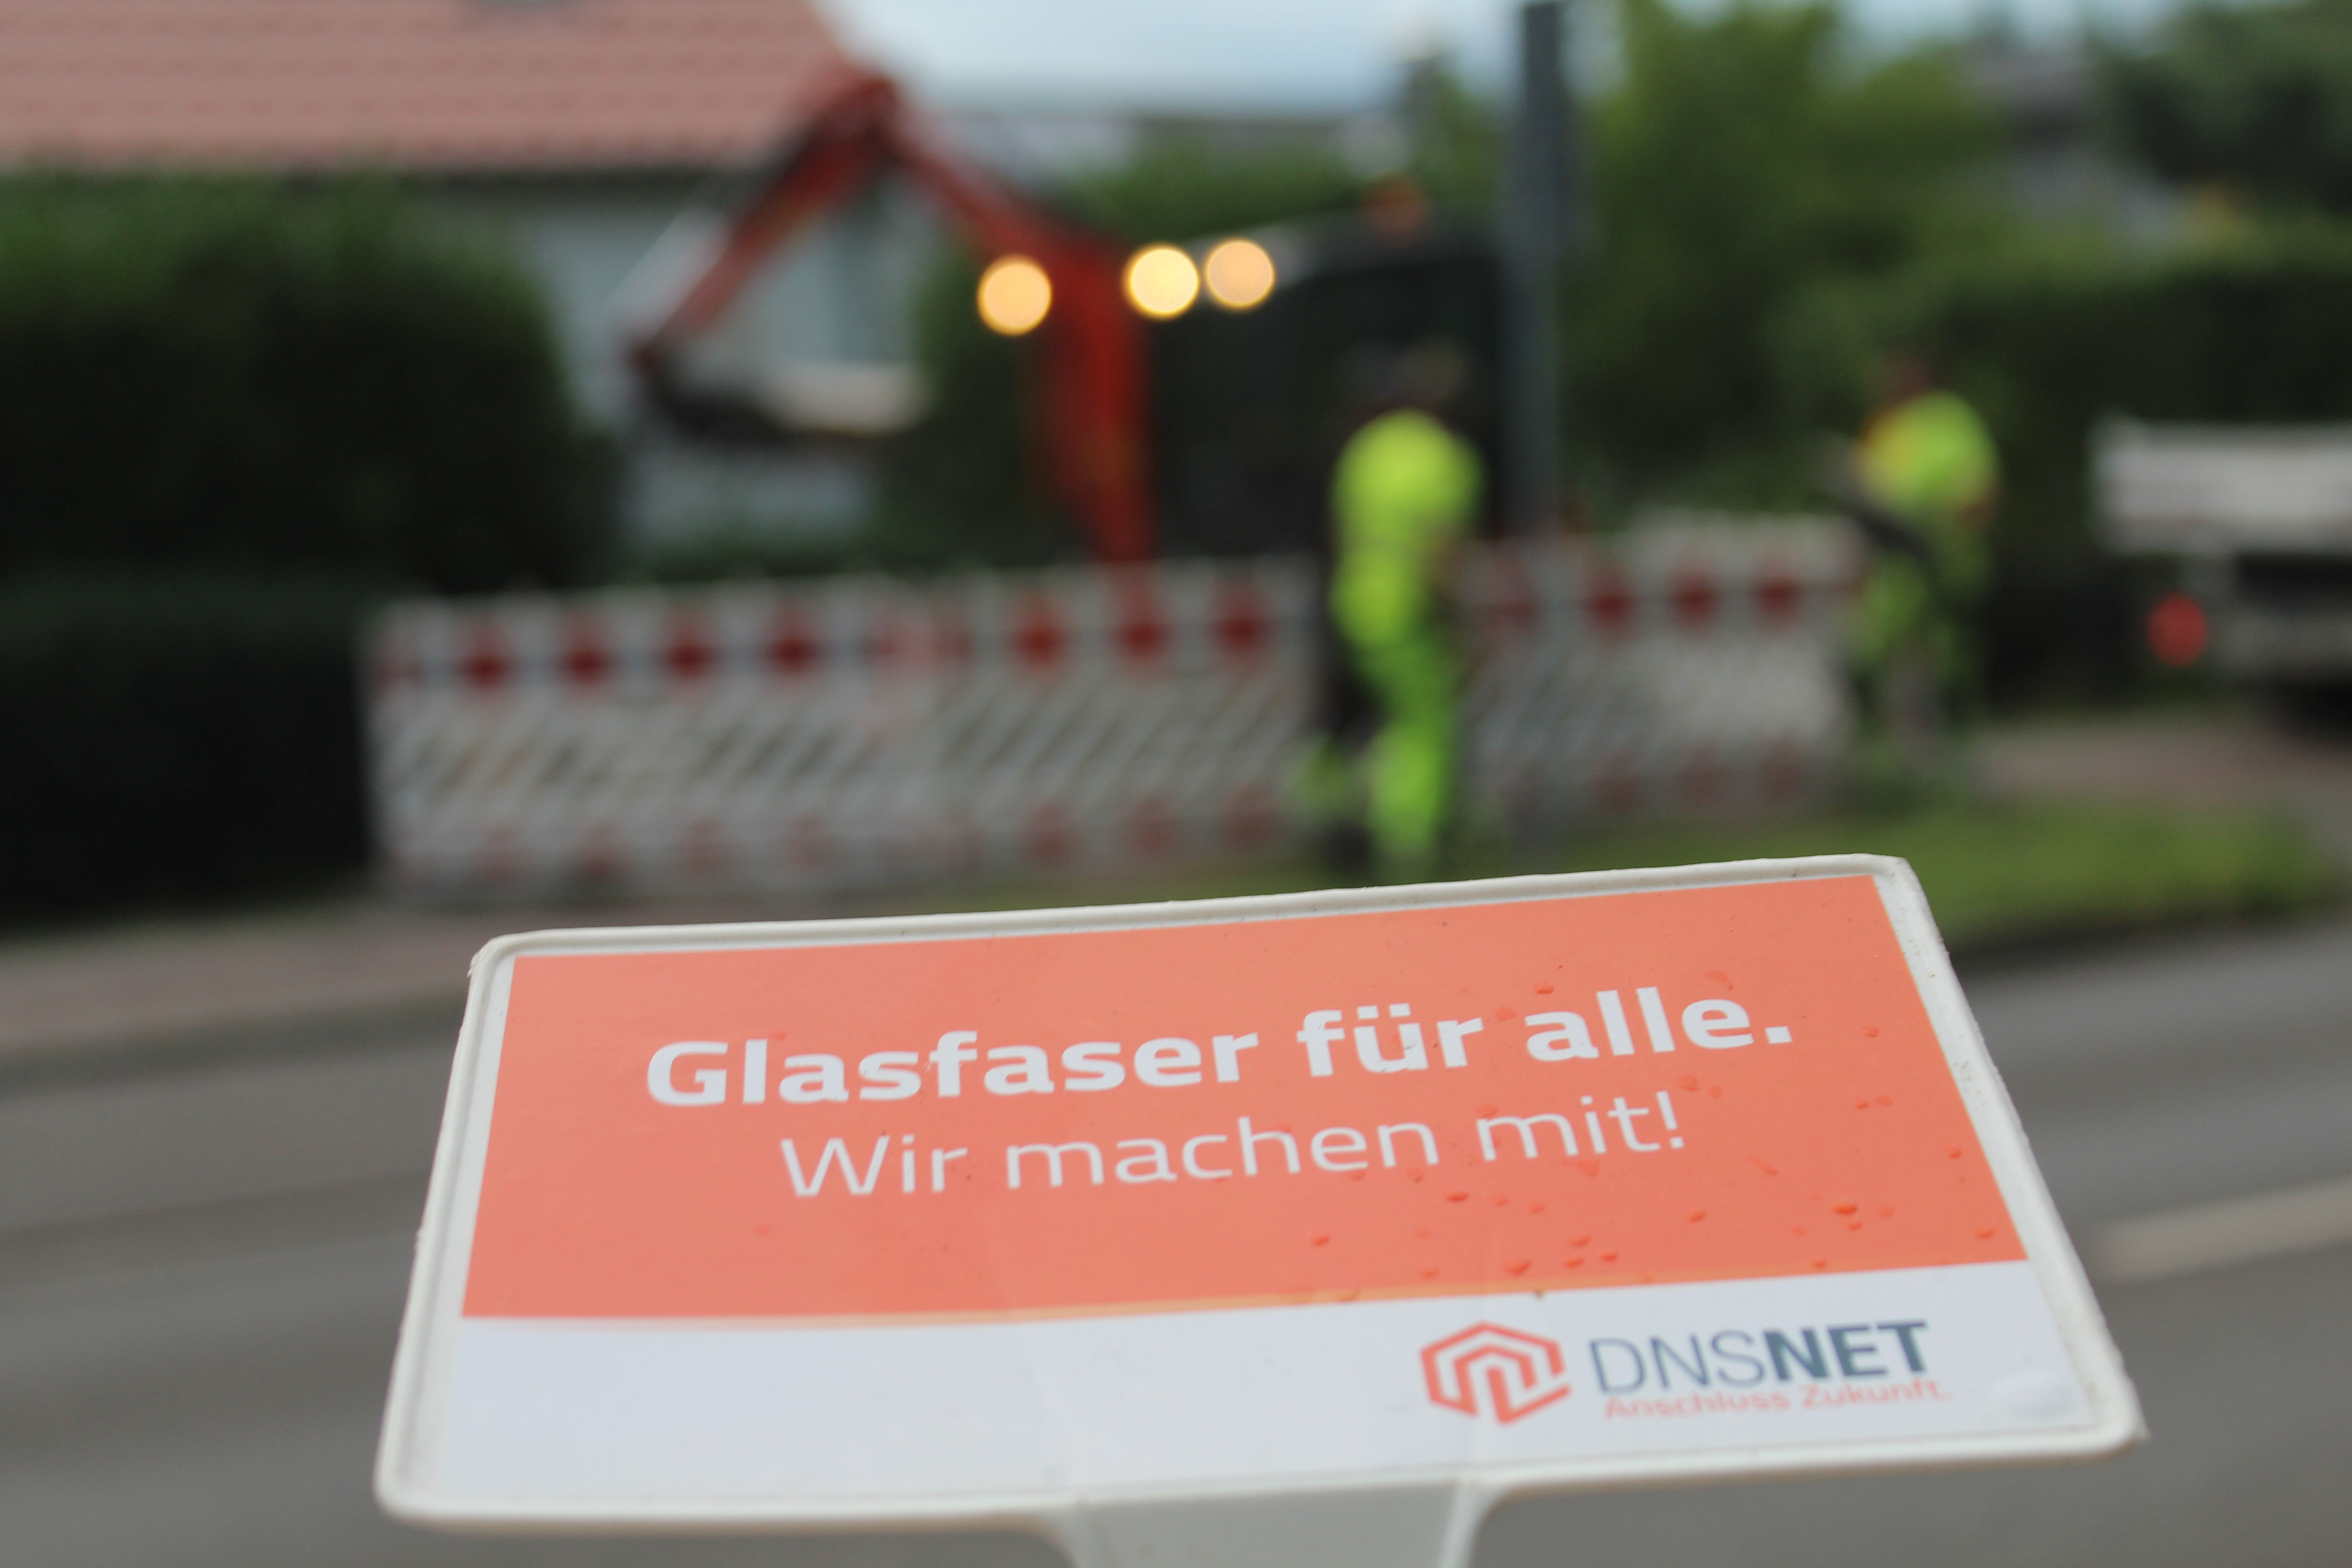 Glasfaserausbau für Brandenburg: das Bundesland holt schnell auf beim Glasfaserausbau und verfügbaren FTTH-Anschlüssen